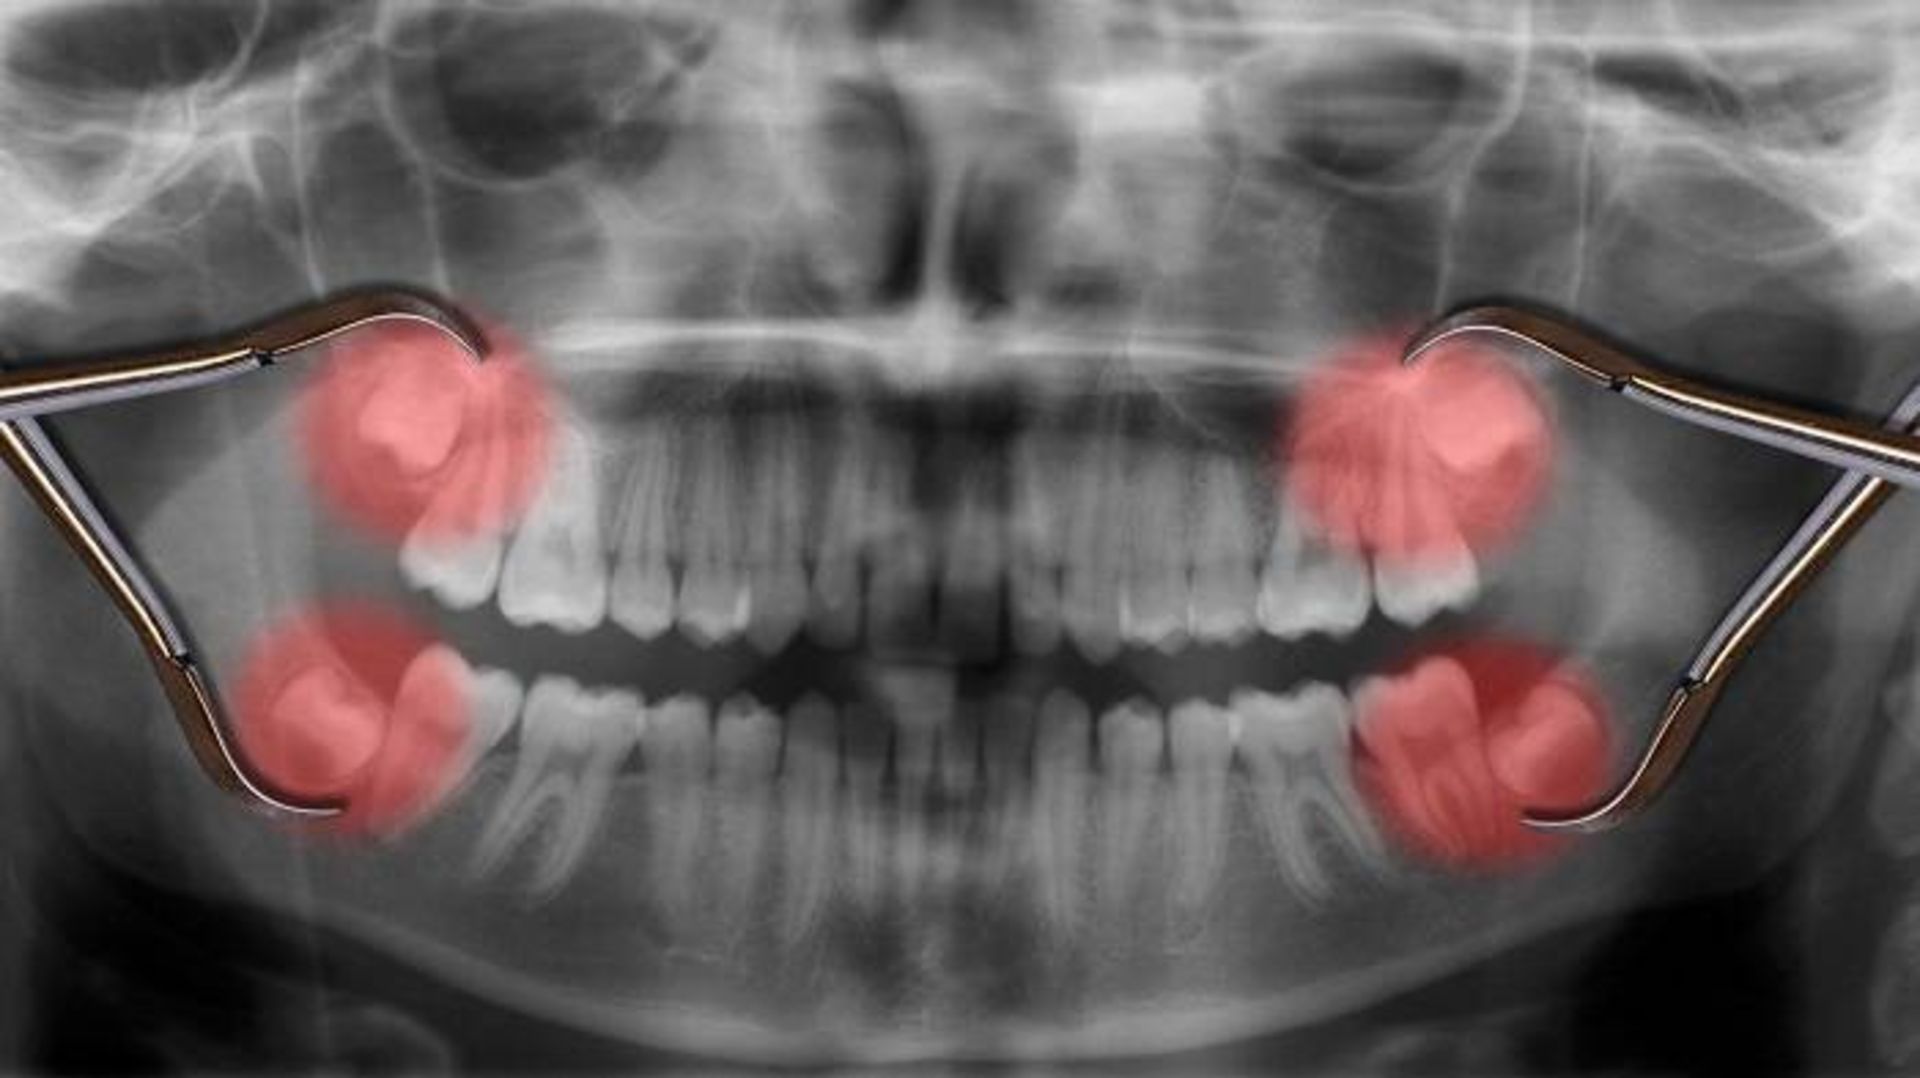 دندان های عقل / wisdom teeth